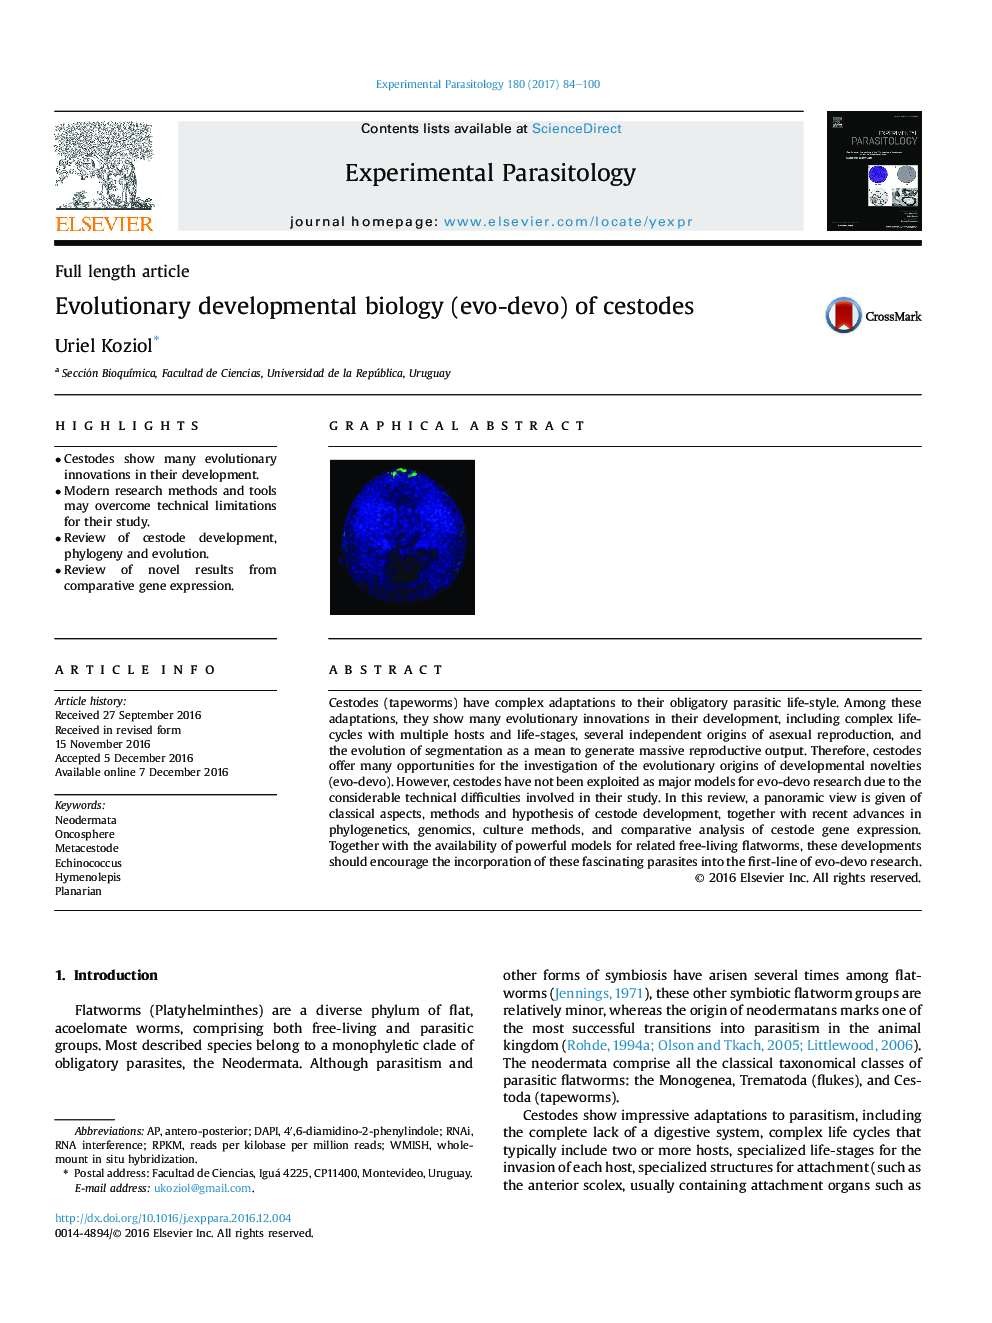 Full length articleEvolutionary developmental biology (evo-devo) of cestodes